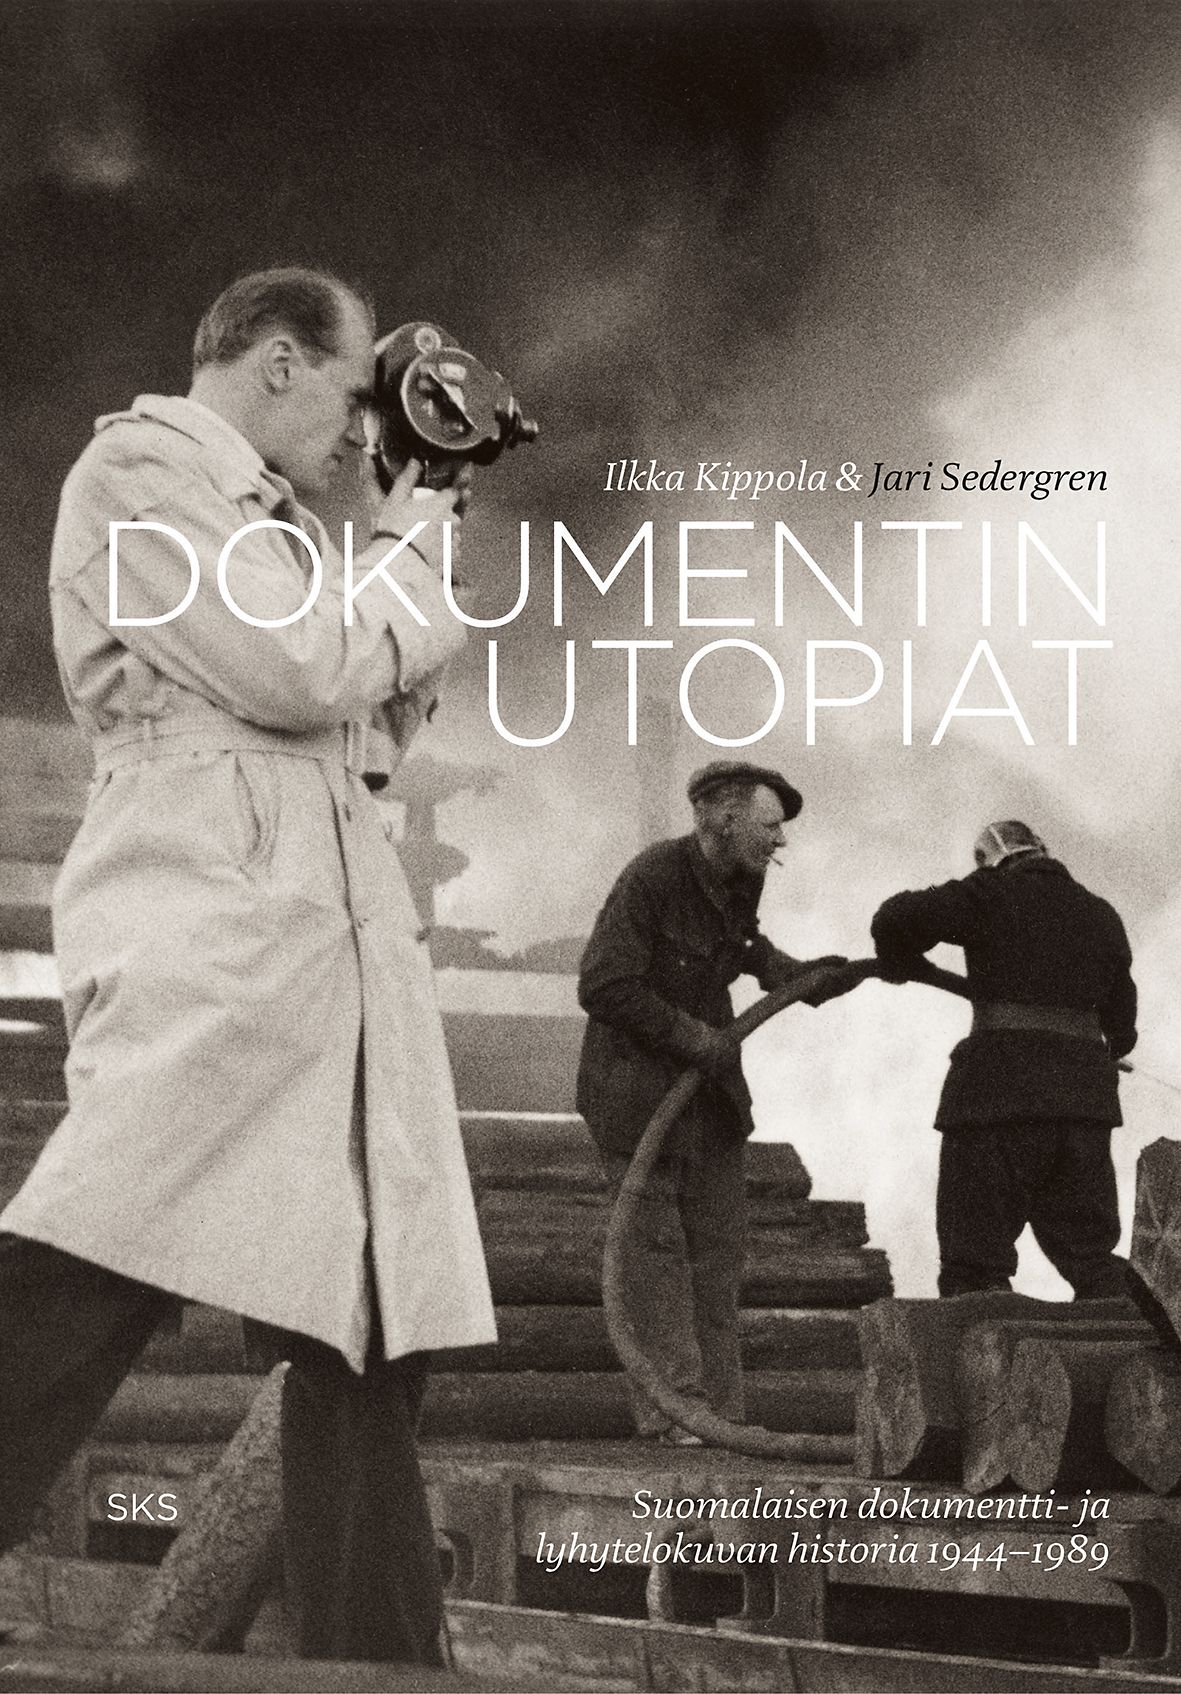 Jari Sedergren & Ilkka Kippola : Dokumentin utopiat